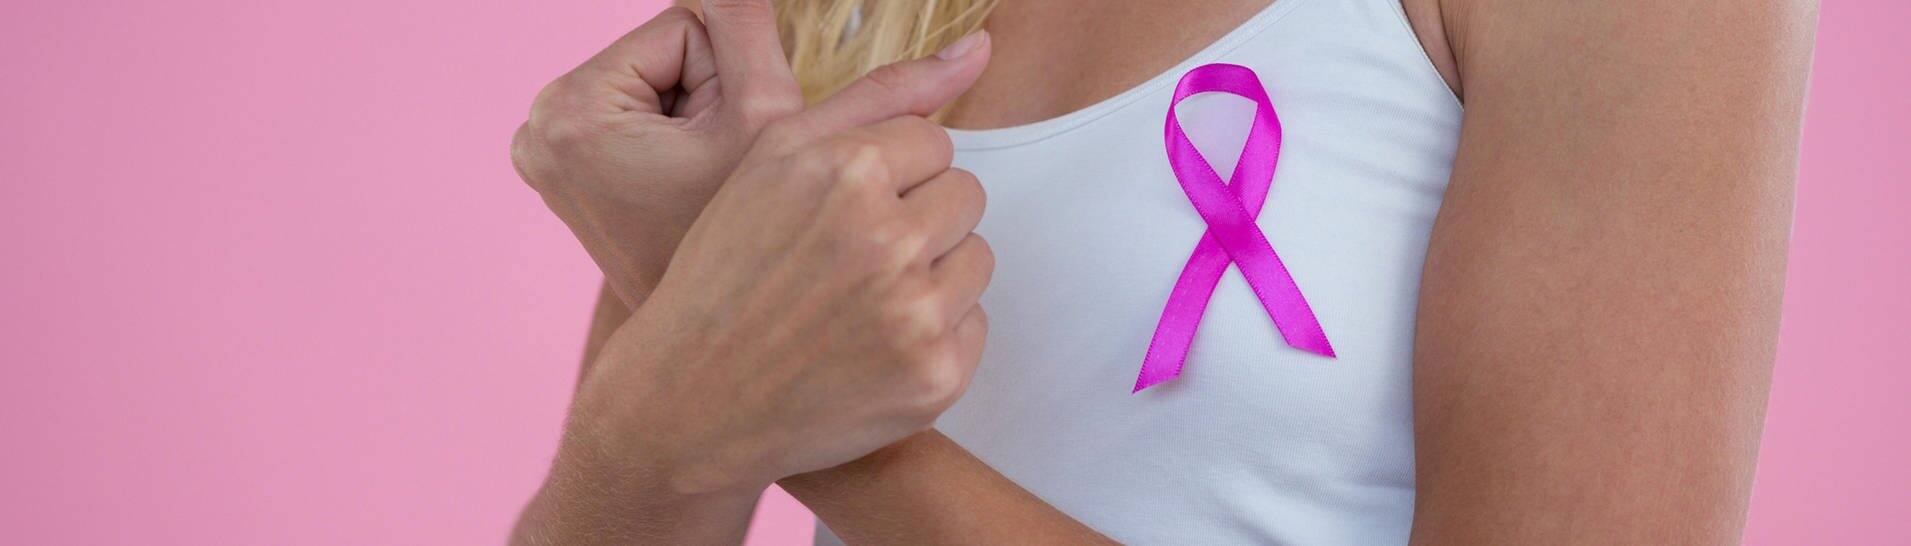 Die rosa Schleife ist ein Symbol gegen Brustkrebs.